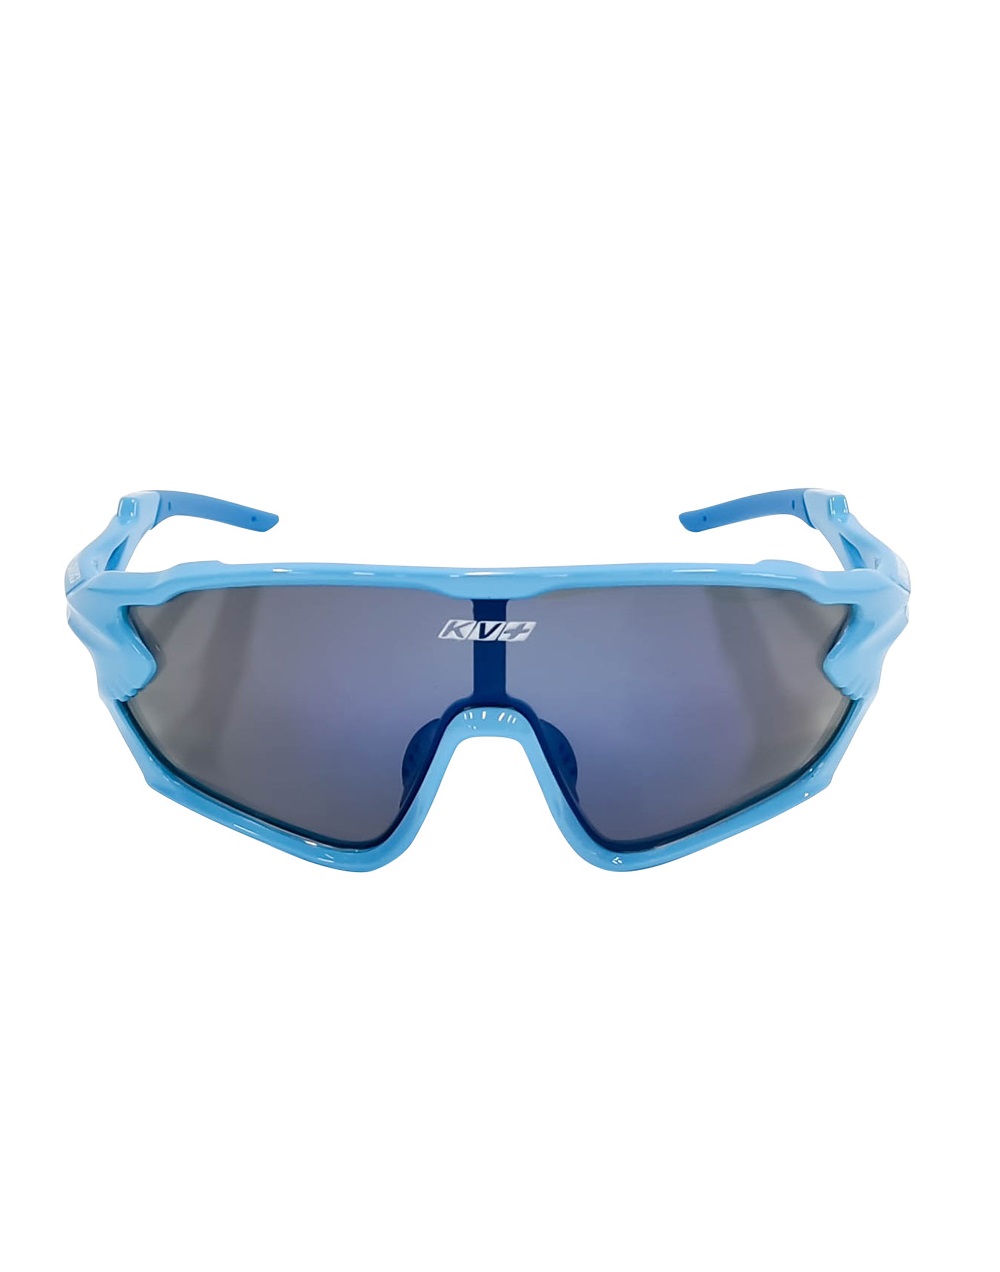 Спортивные солнцезащитные очки унисекс KV+ Delta glasses синие